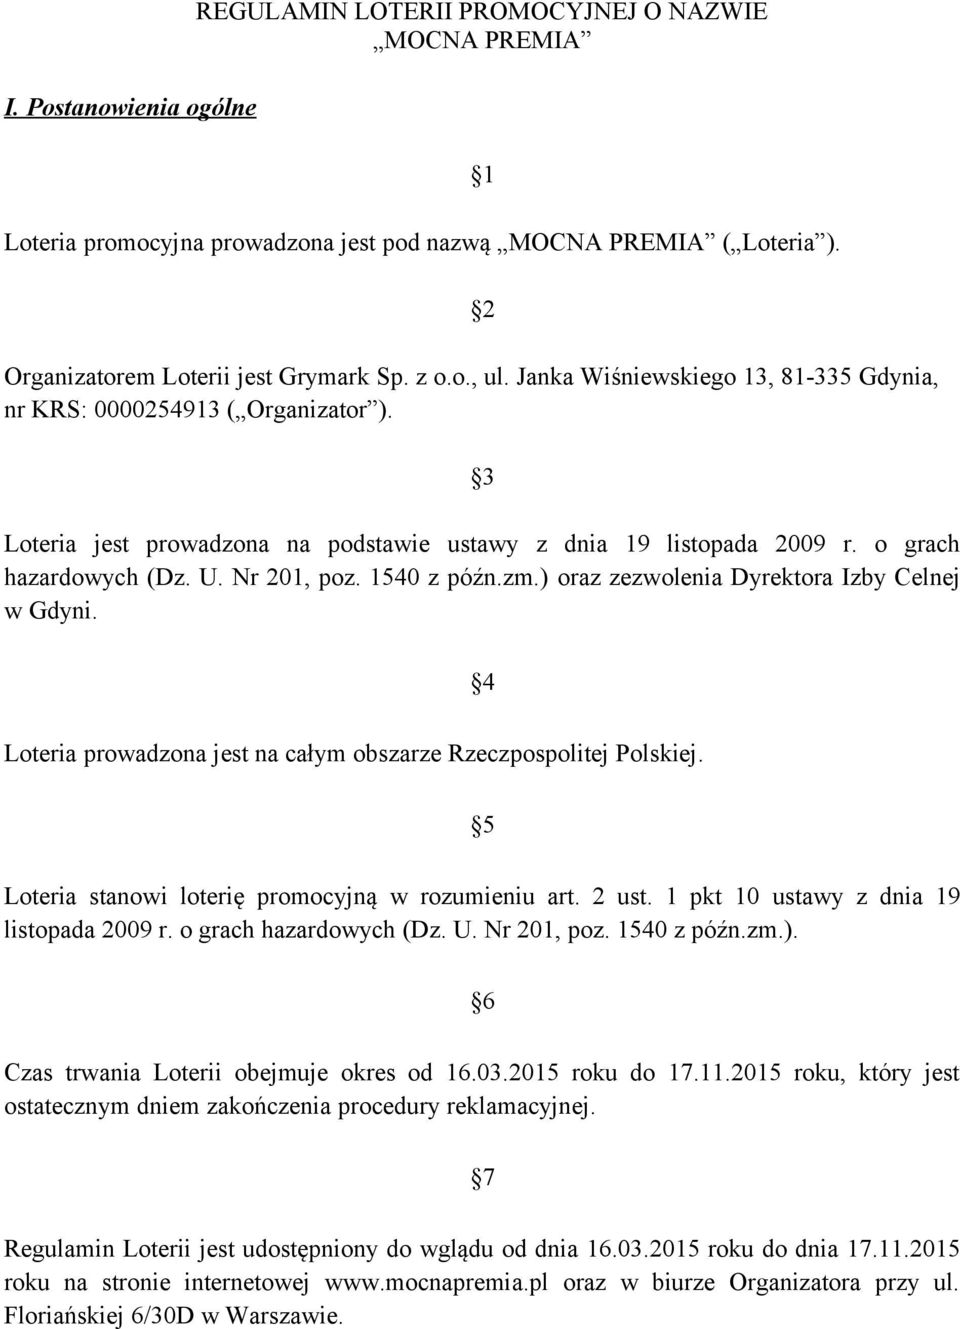 1540 z późn.zm.) oraz zezwolenia Dyrektora Izby Celnej w Gdyni. 4 Loteria prowadzona jest na całym obszarze Rzeczpospolitej Polskiej. 5 Loteria stanowi loterię promocyjną w rozumieniu art. 2 ust.